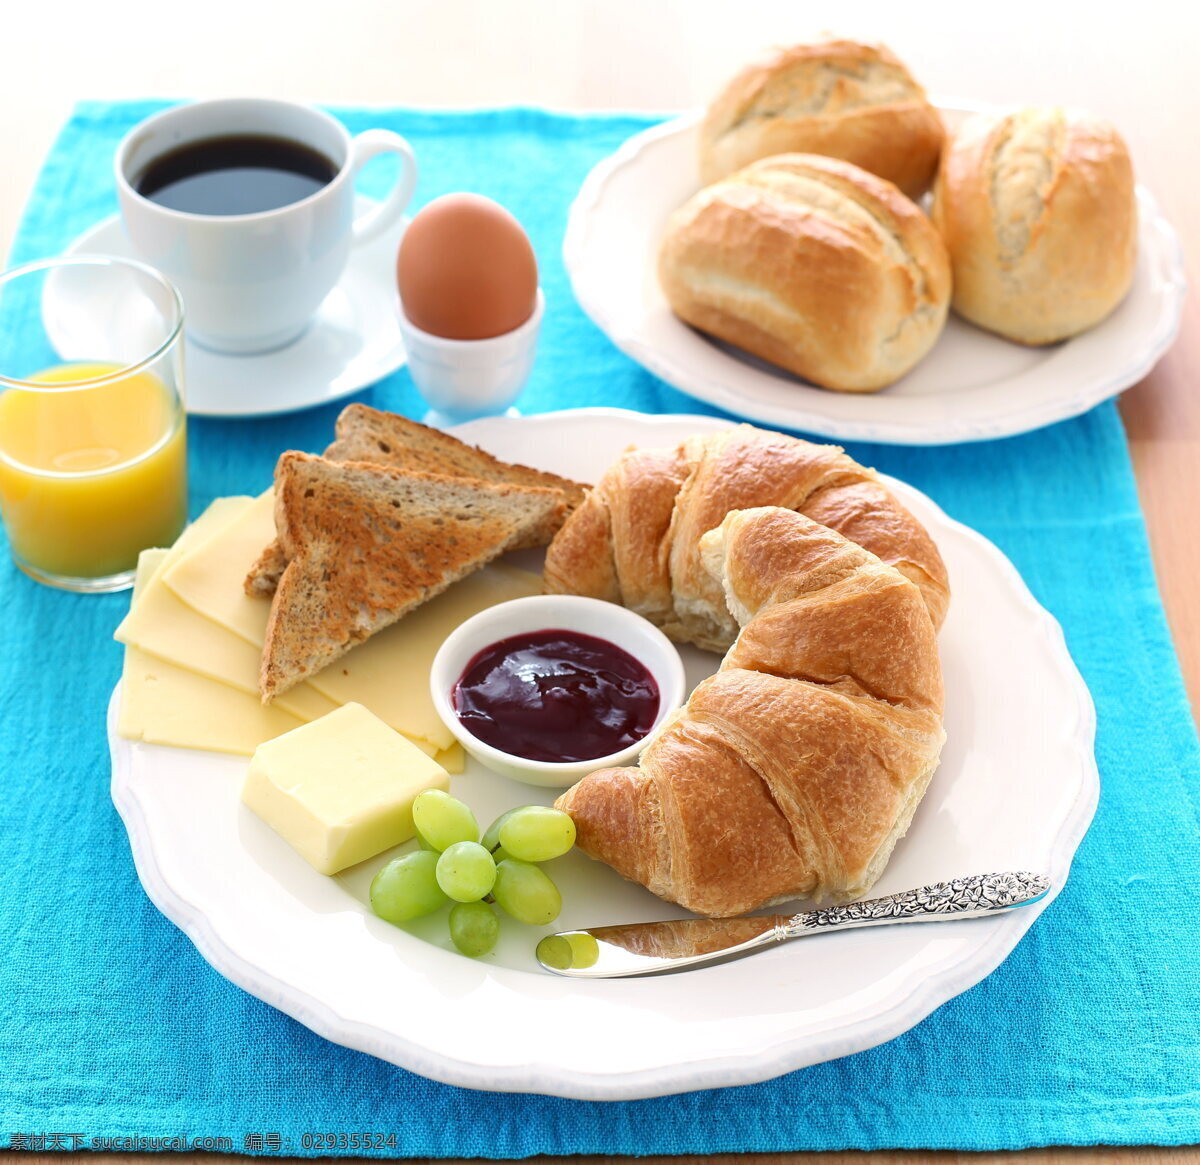 特色早餐 早餐 营养早餐 面包 咖啡 餐盘